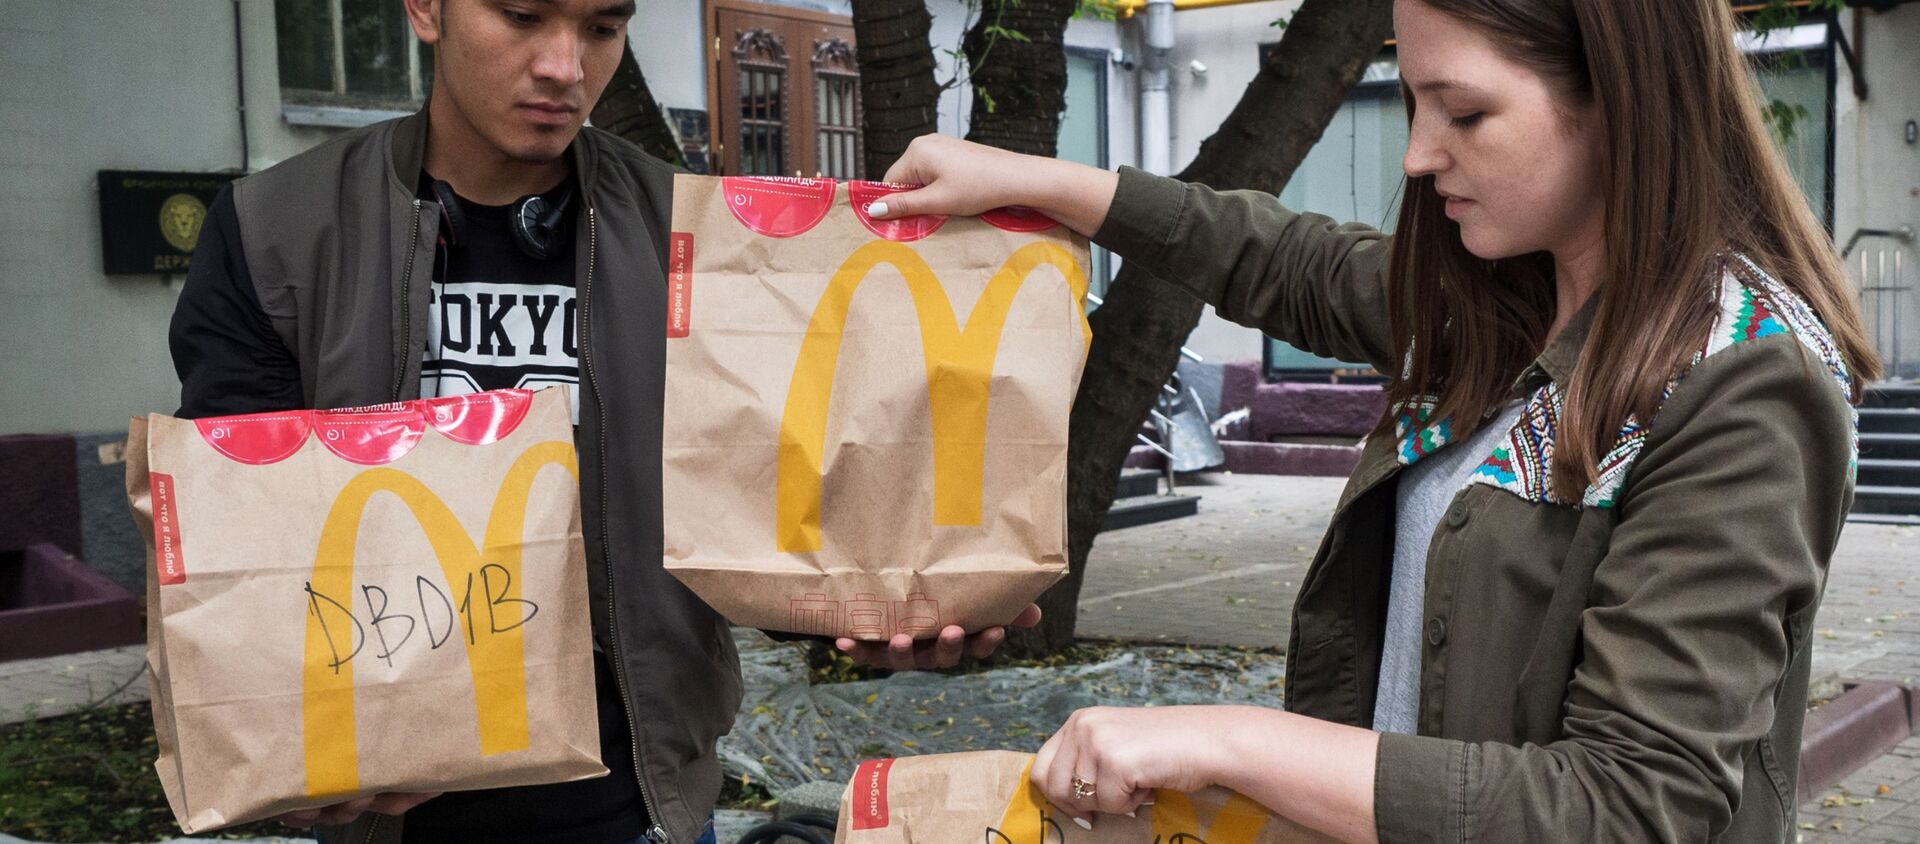 Молодые люди держат пакеты с едой из McDonald’s  - Sputnik Таджикистан, 1920, 14.09.2019